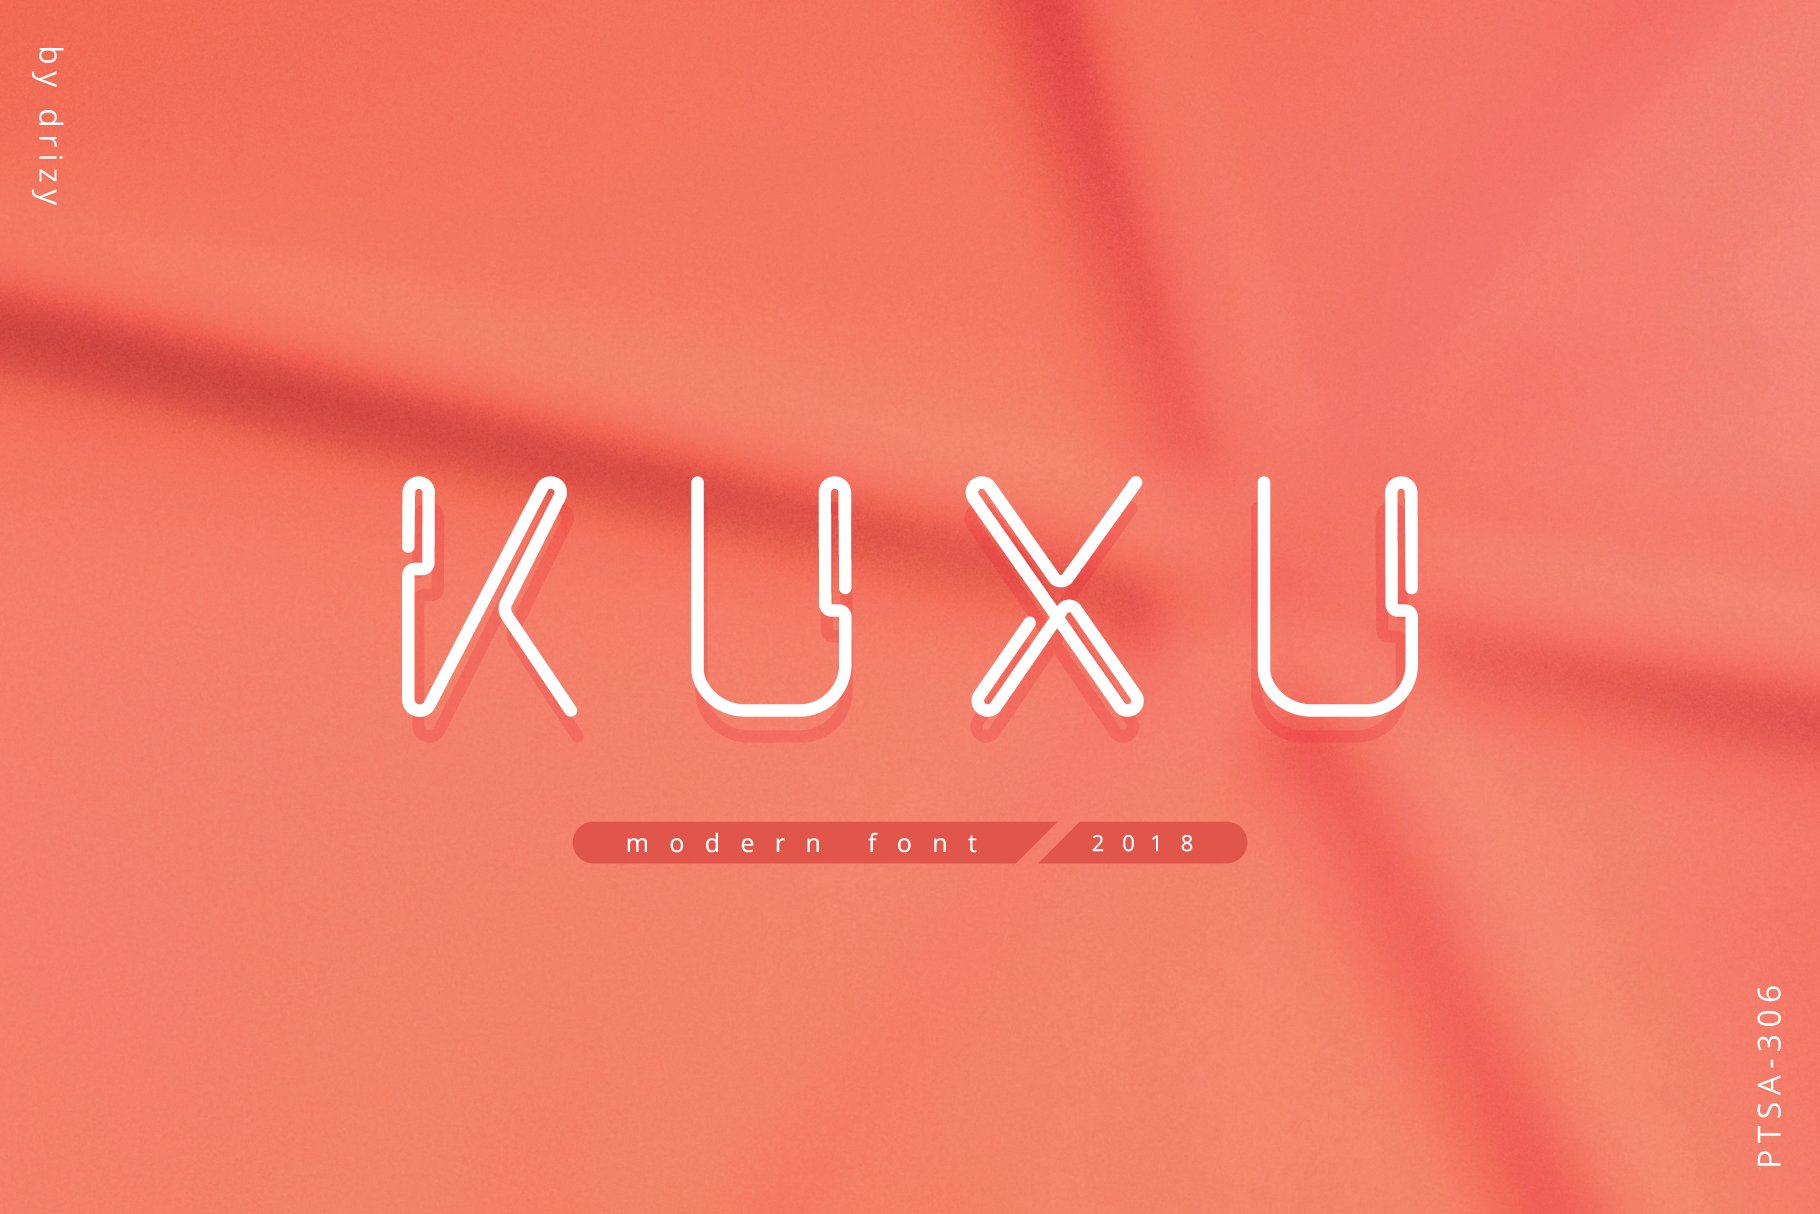 Beispiel einer Kuxu-Schriftart